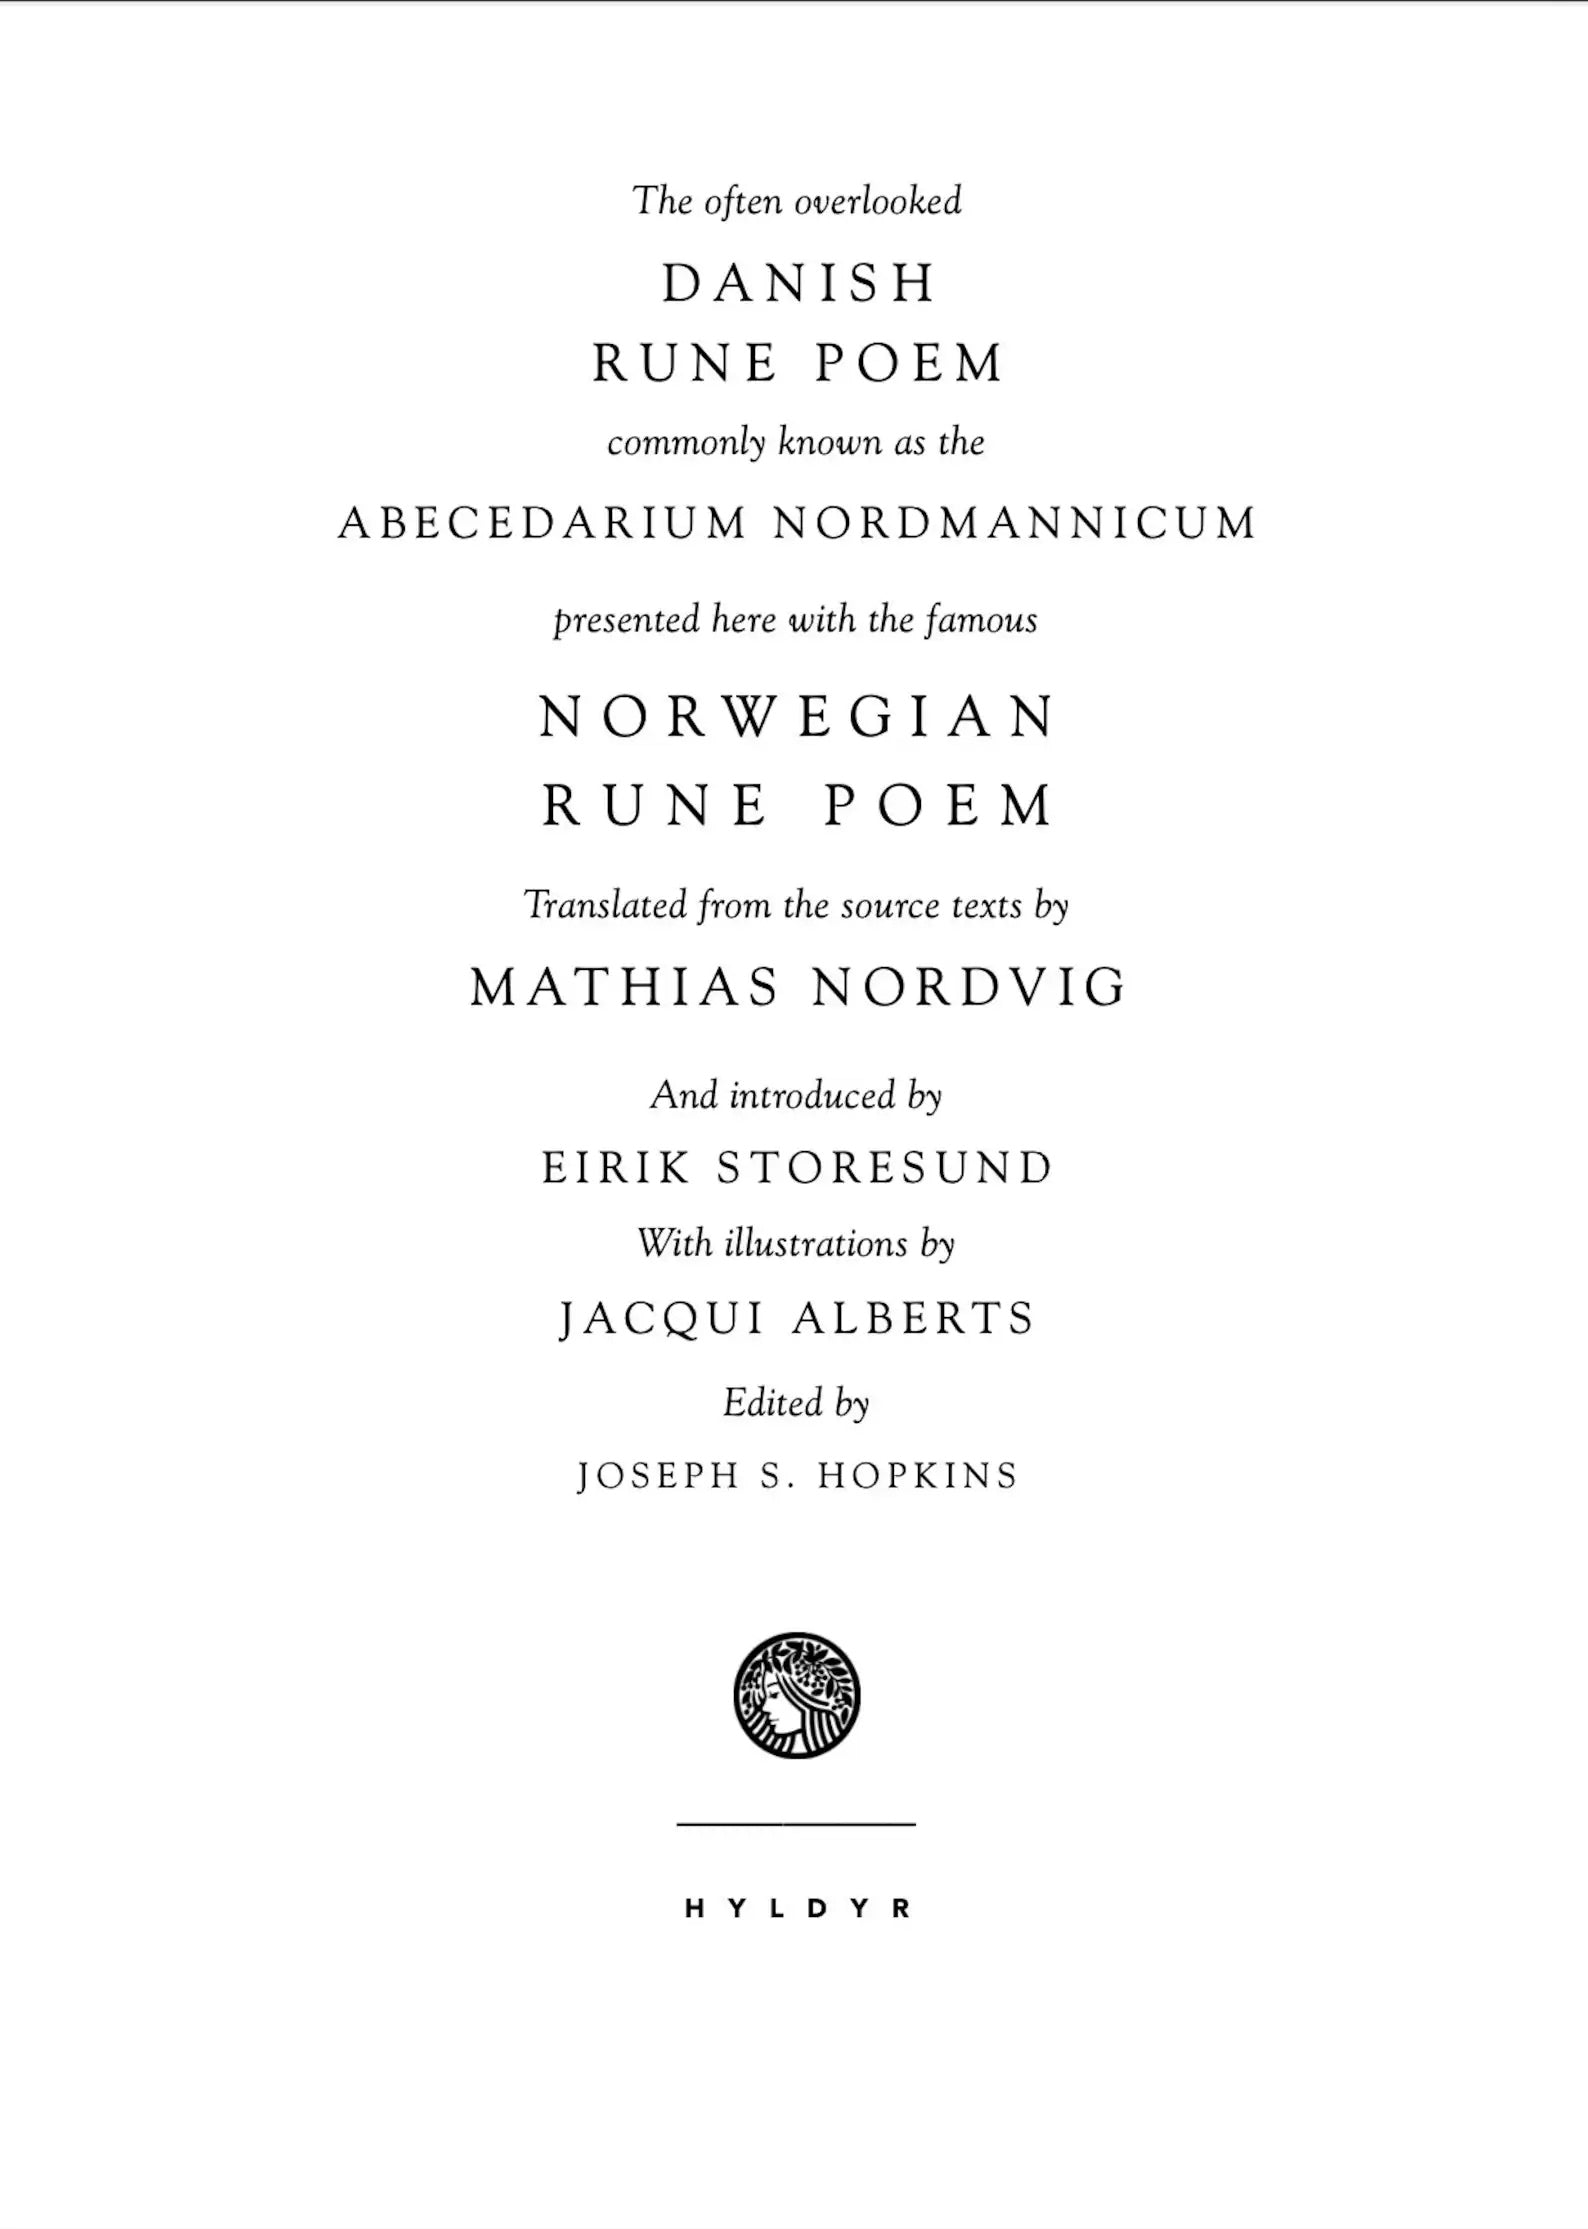 The Danish & Norwegian Rune Poems